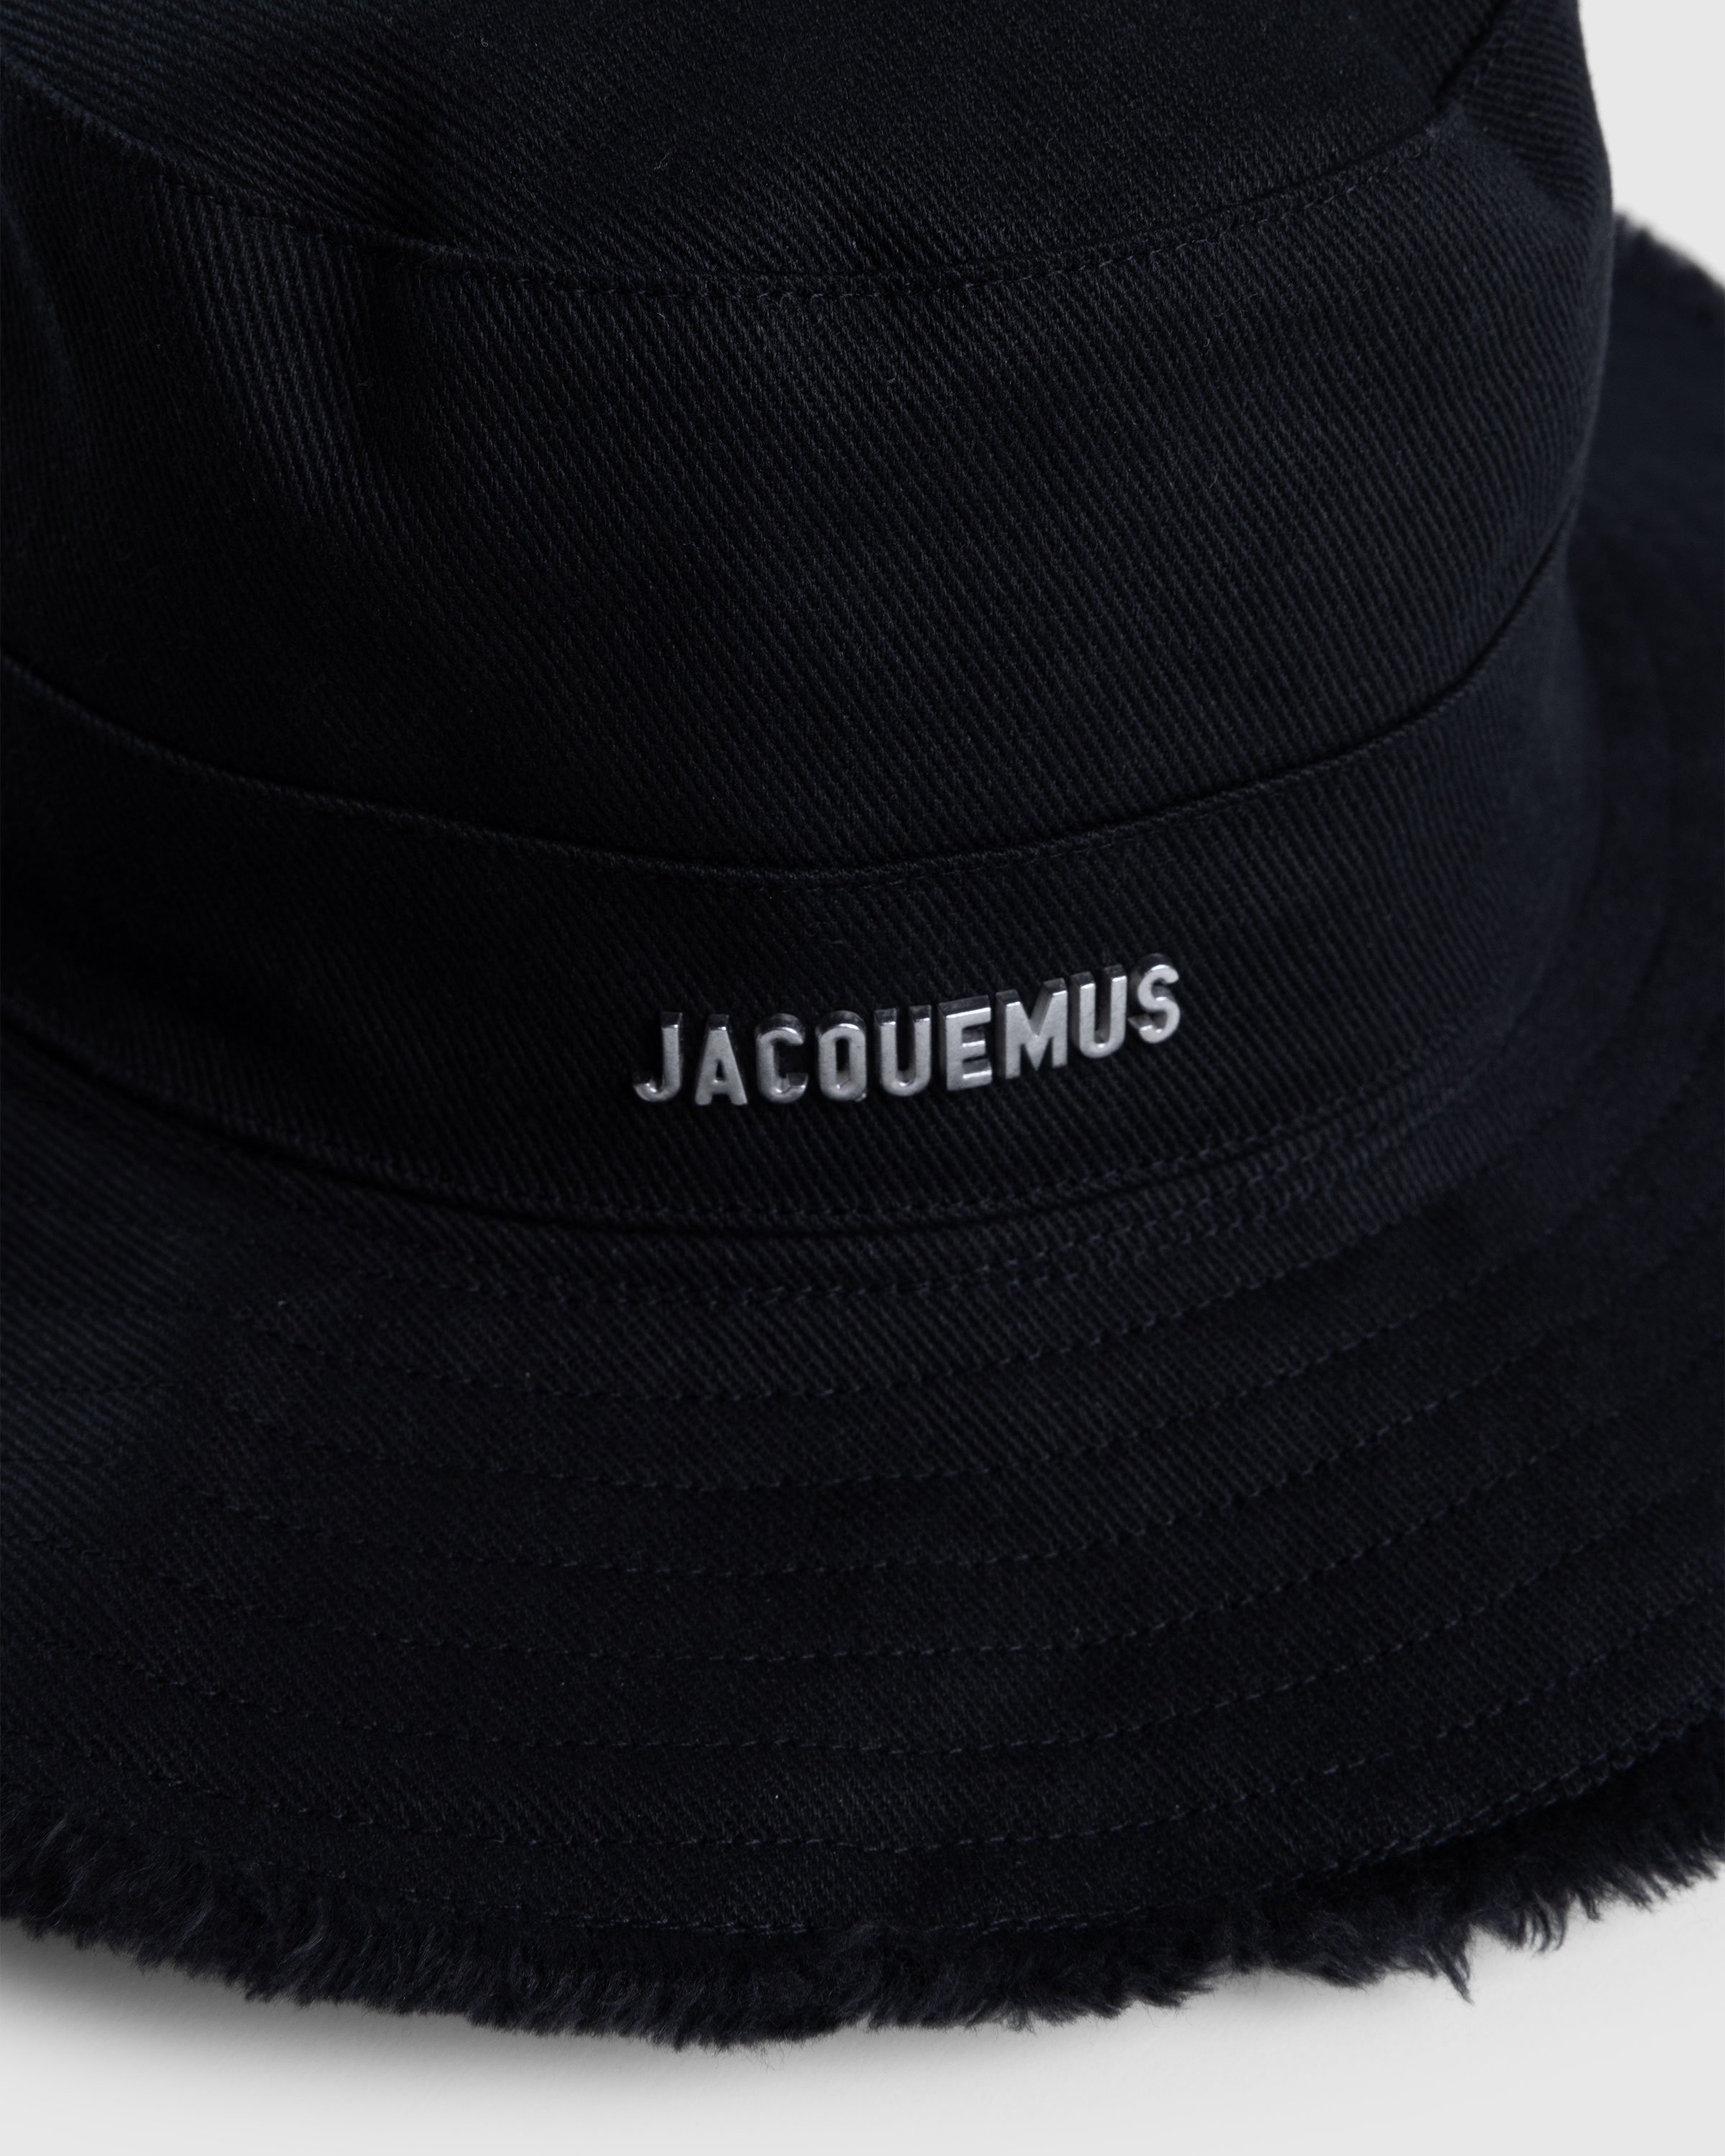 JACQUEMUS - LE BOB ARTICHAUT - Accessories - Black - Image 5